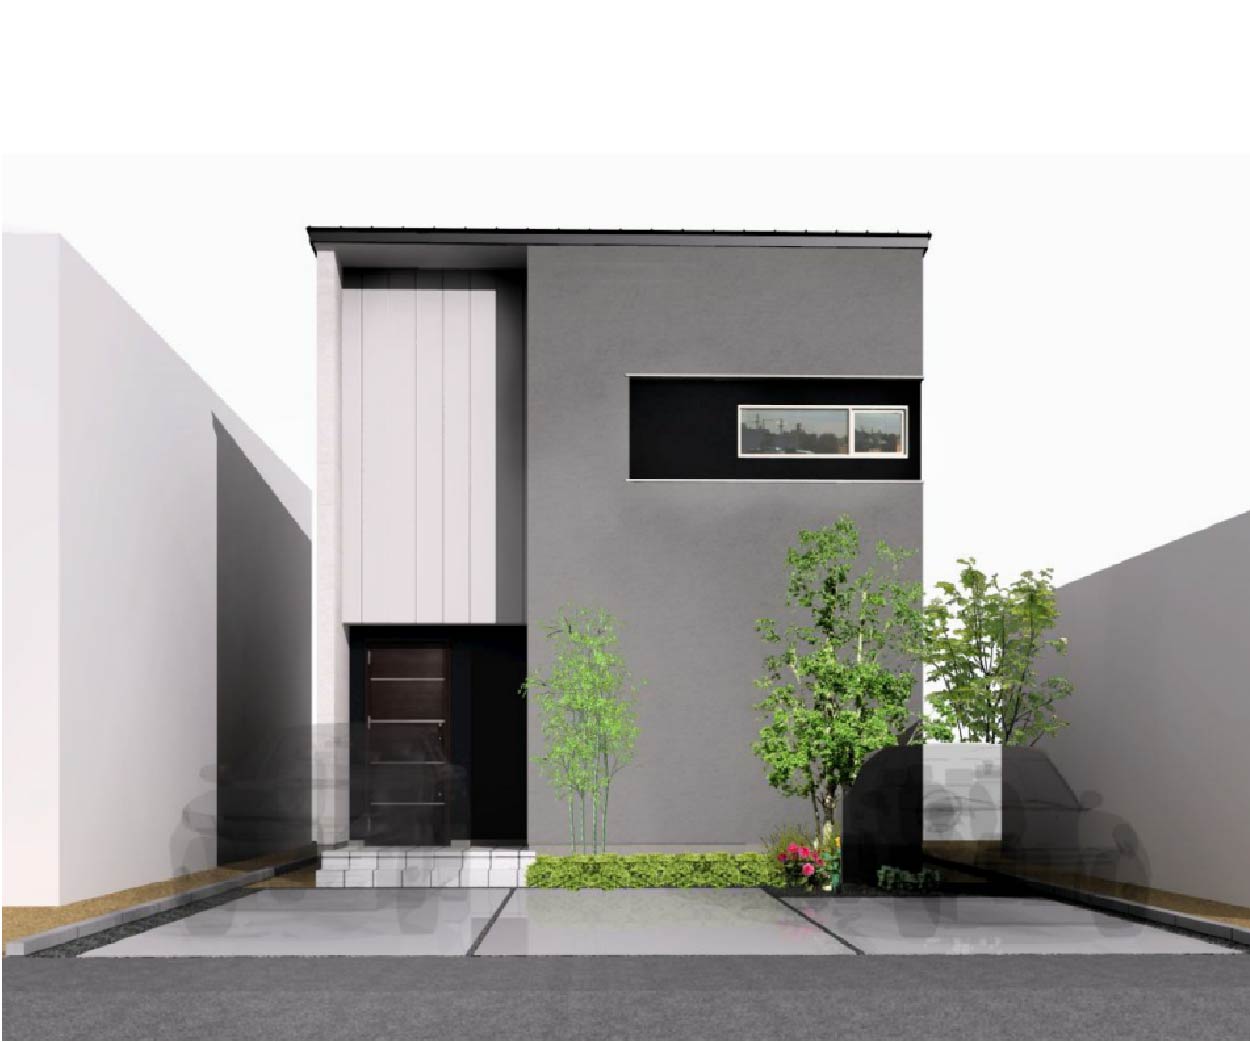 新潟市中央区鐙西の【土地】の建物プラン例の外観パース